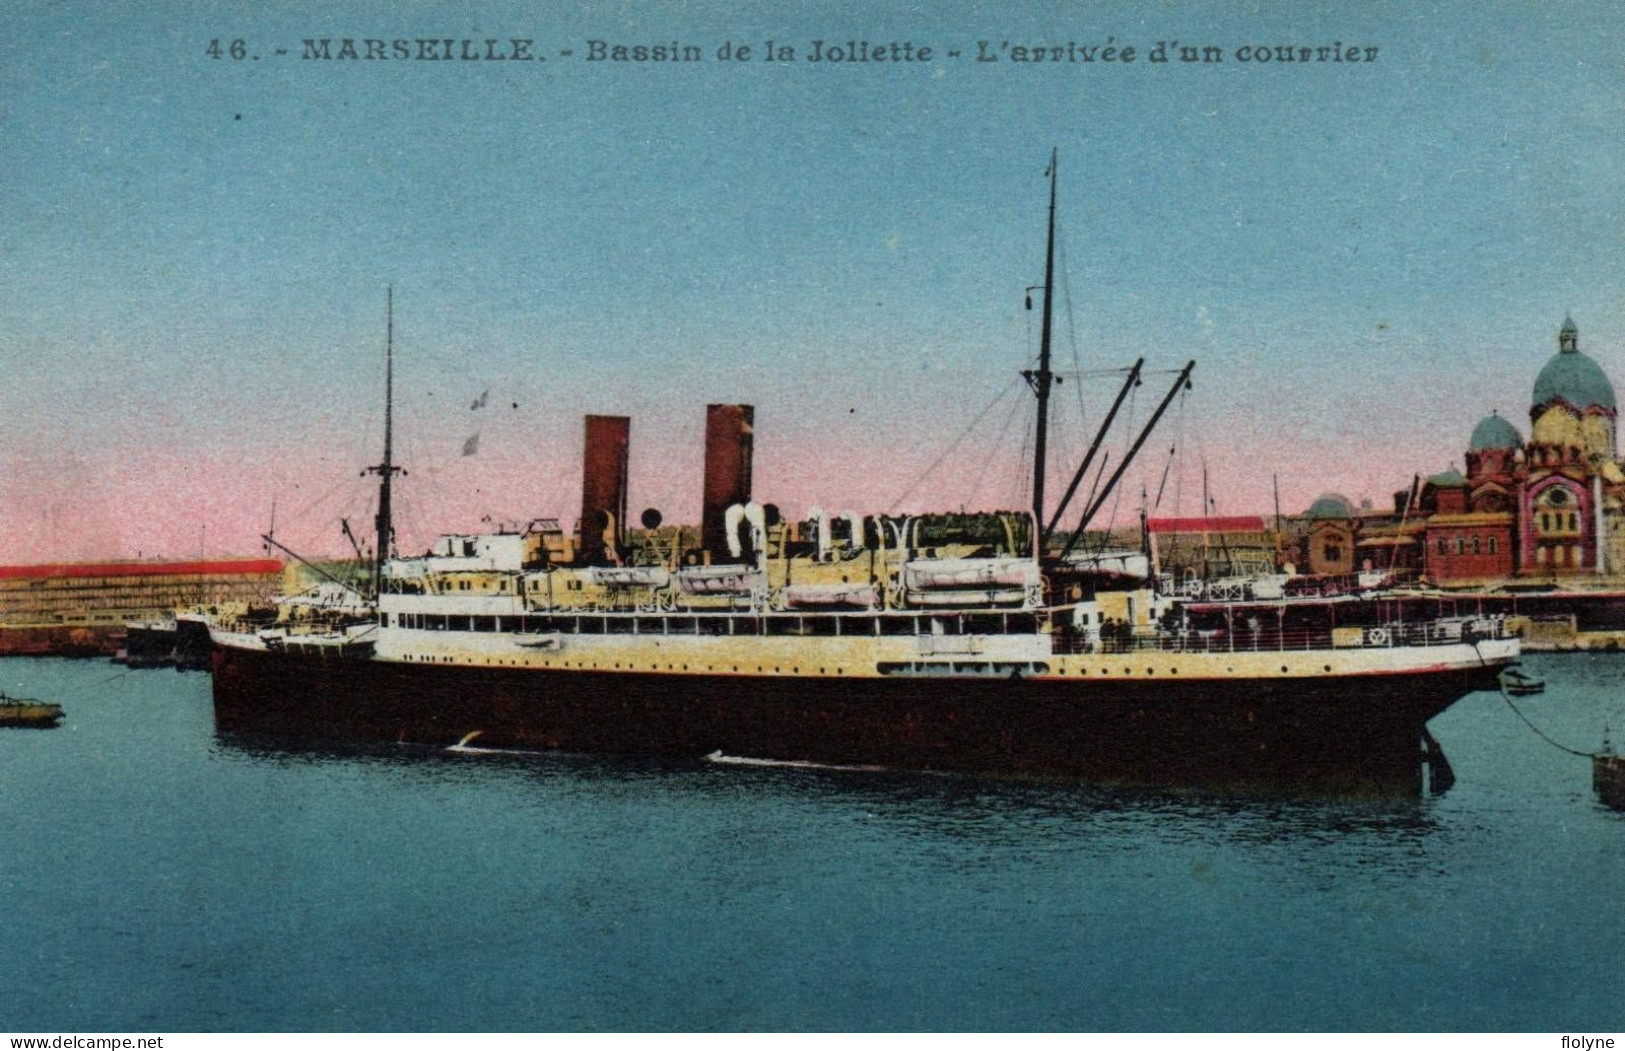 Marseille - Bassin De La Joliette - L'arrivée D'un Courrier - Bateau - Joliette, Hafenzone